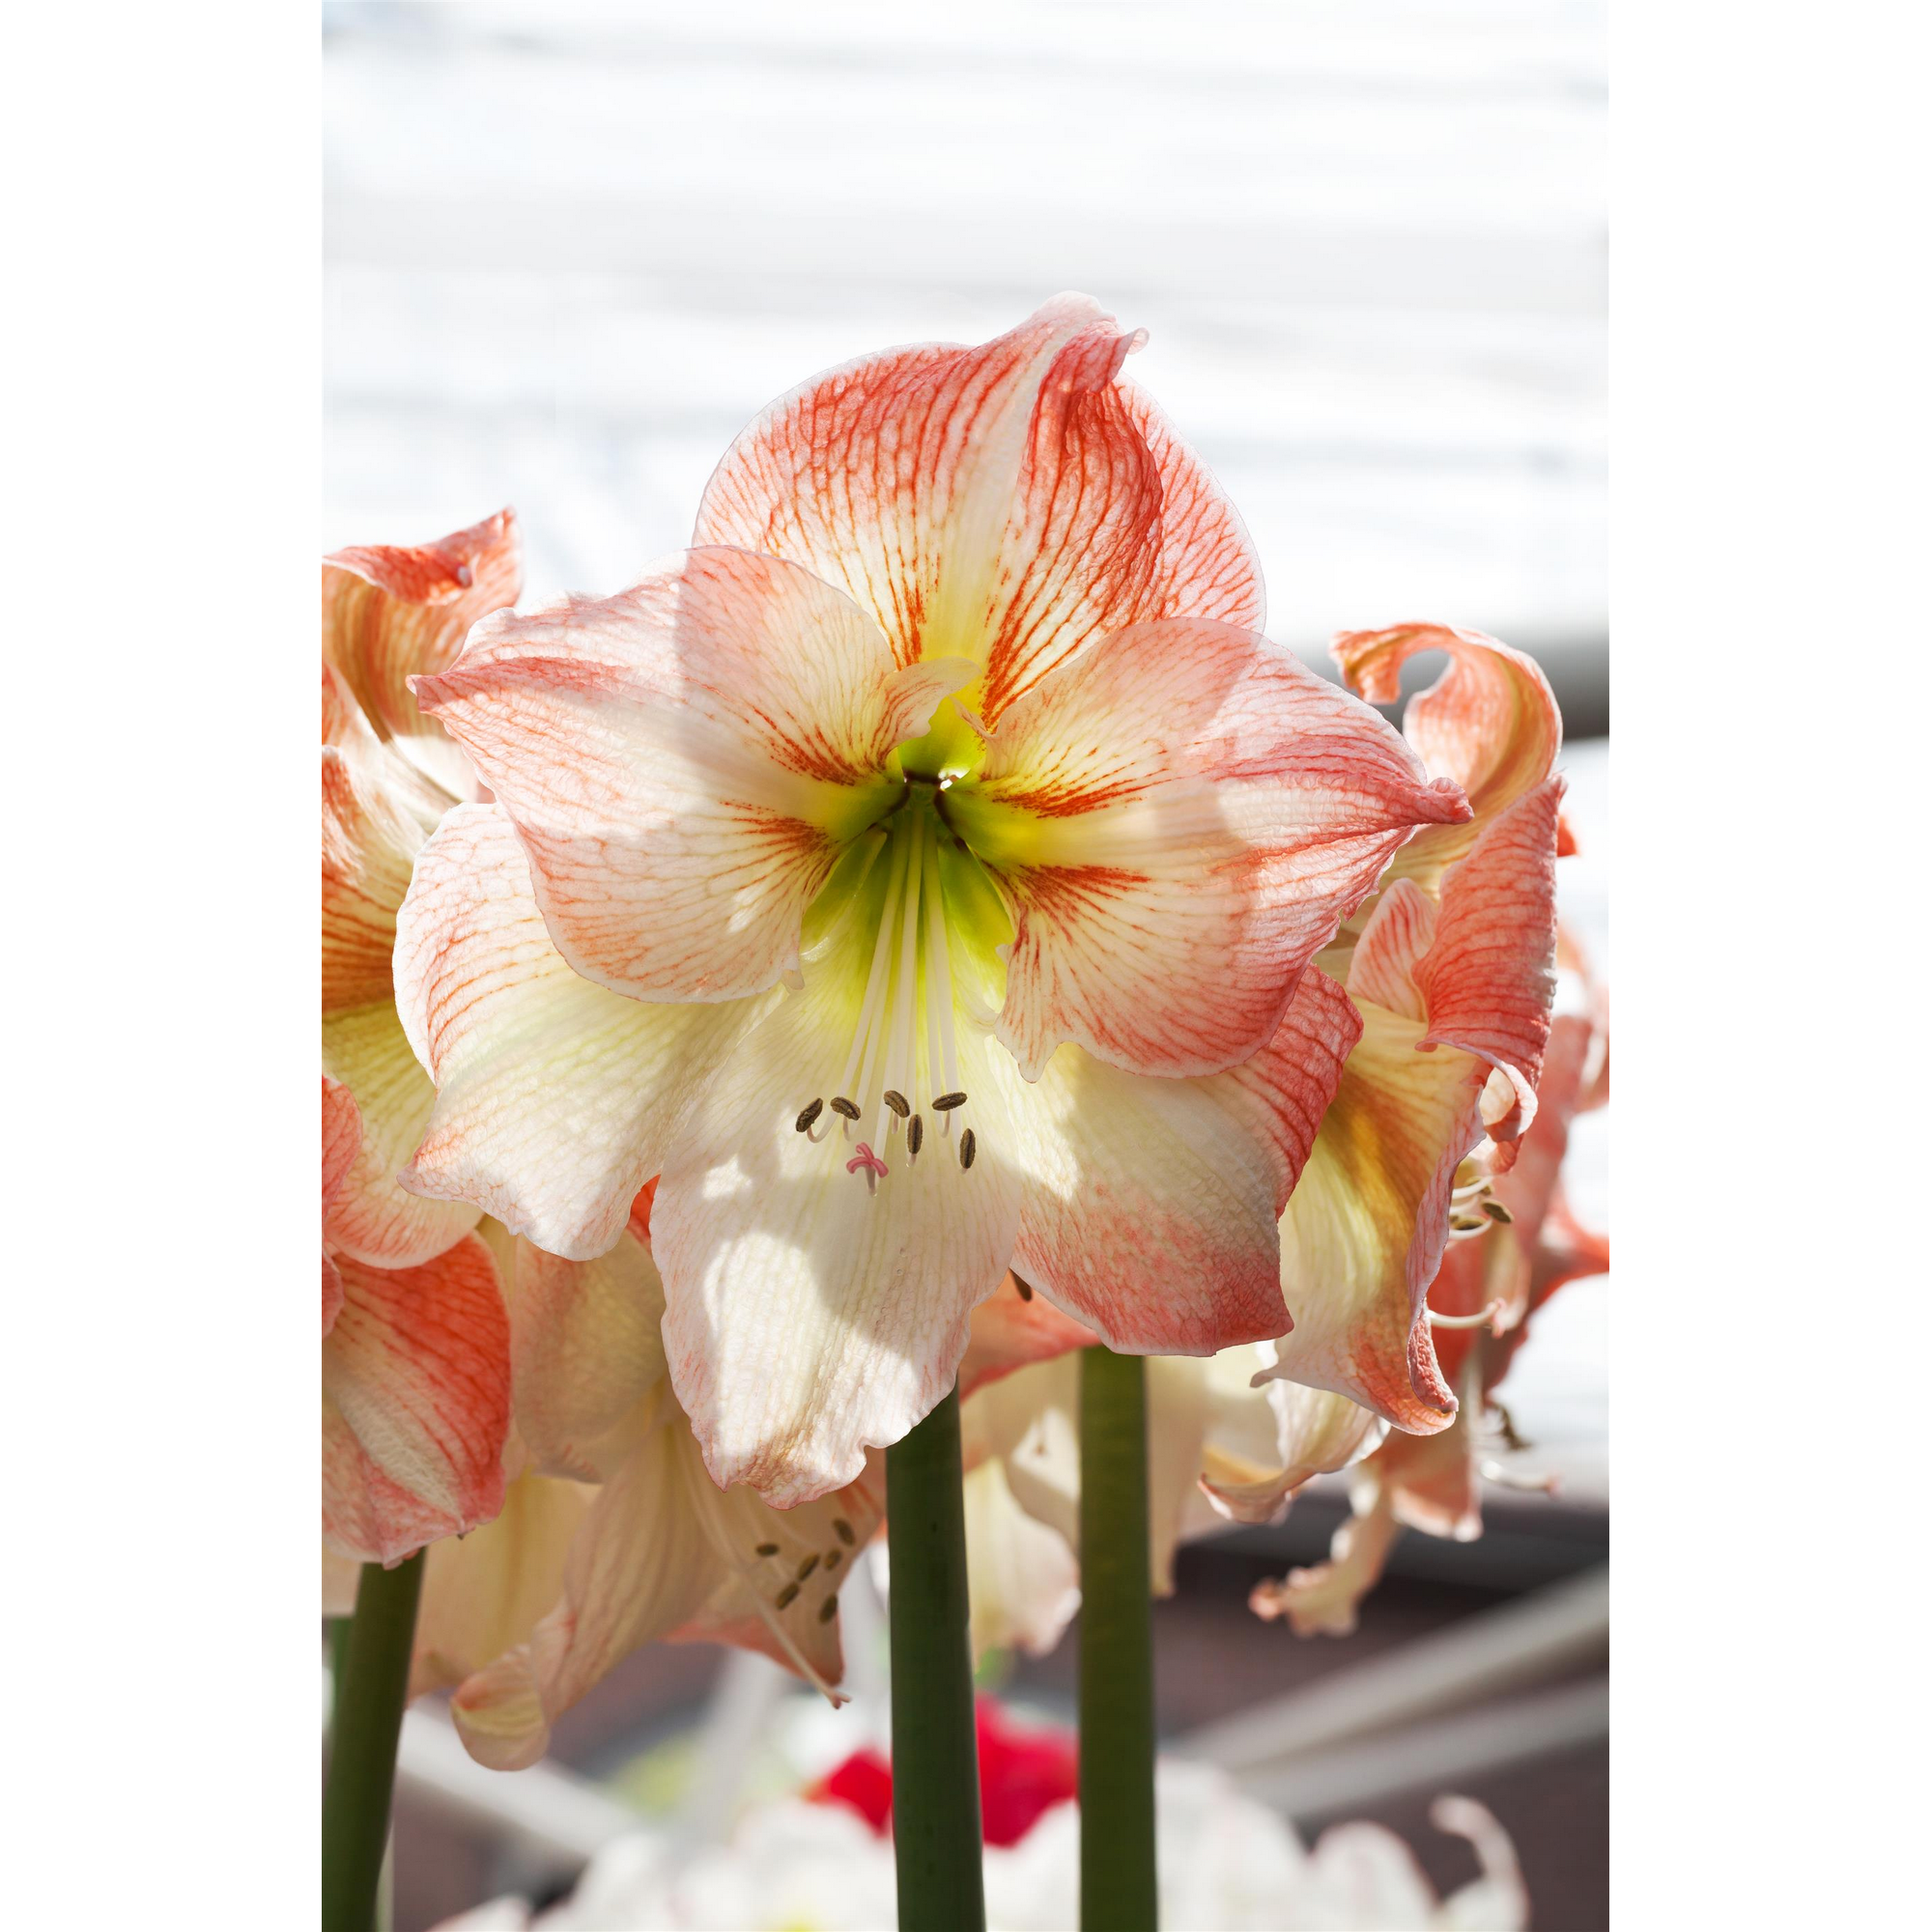 Amaryllis mit 2 Trieben weiß-pink 12 cm Topf, 2er-Set + product picture